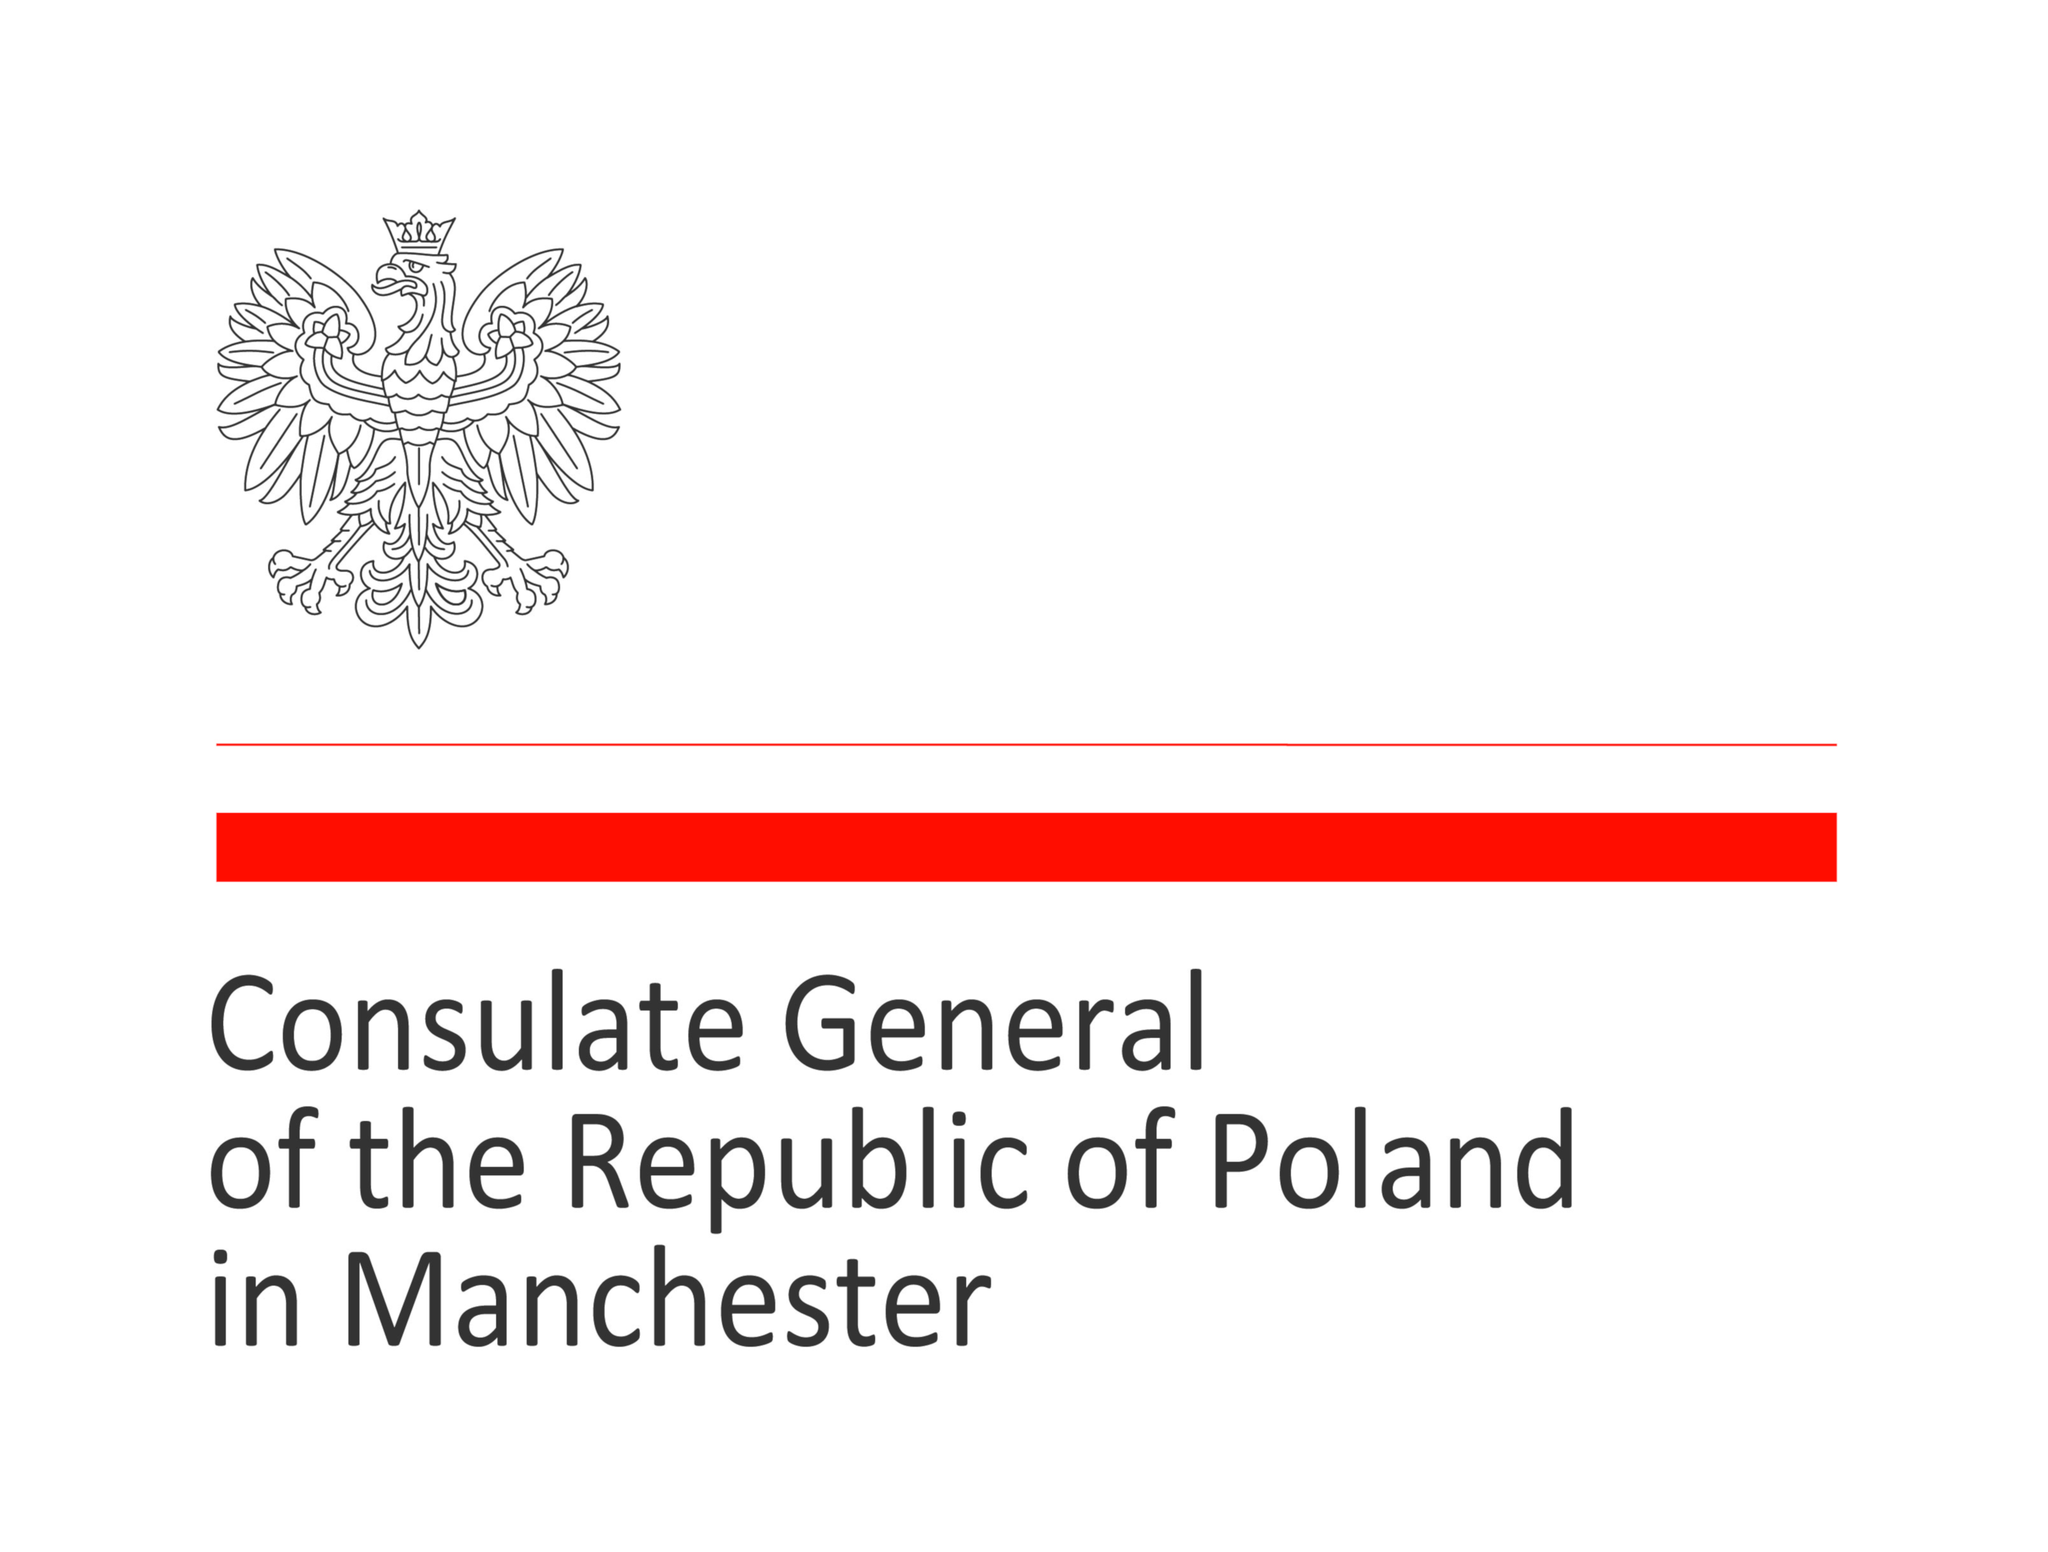 Oburzające Zachowanie Pracownika Polskiej Placówki Dyplomatycznej w Manchesterze